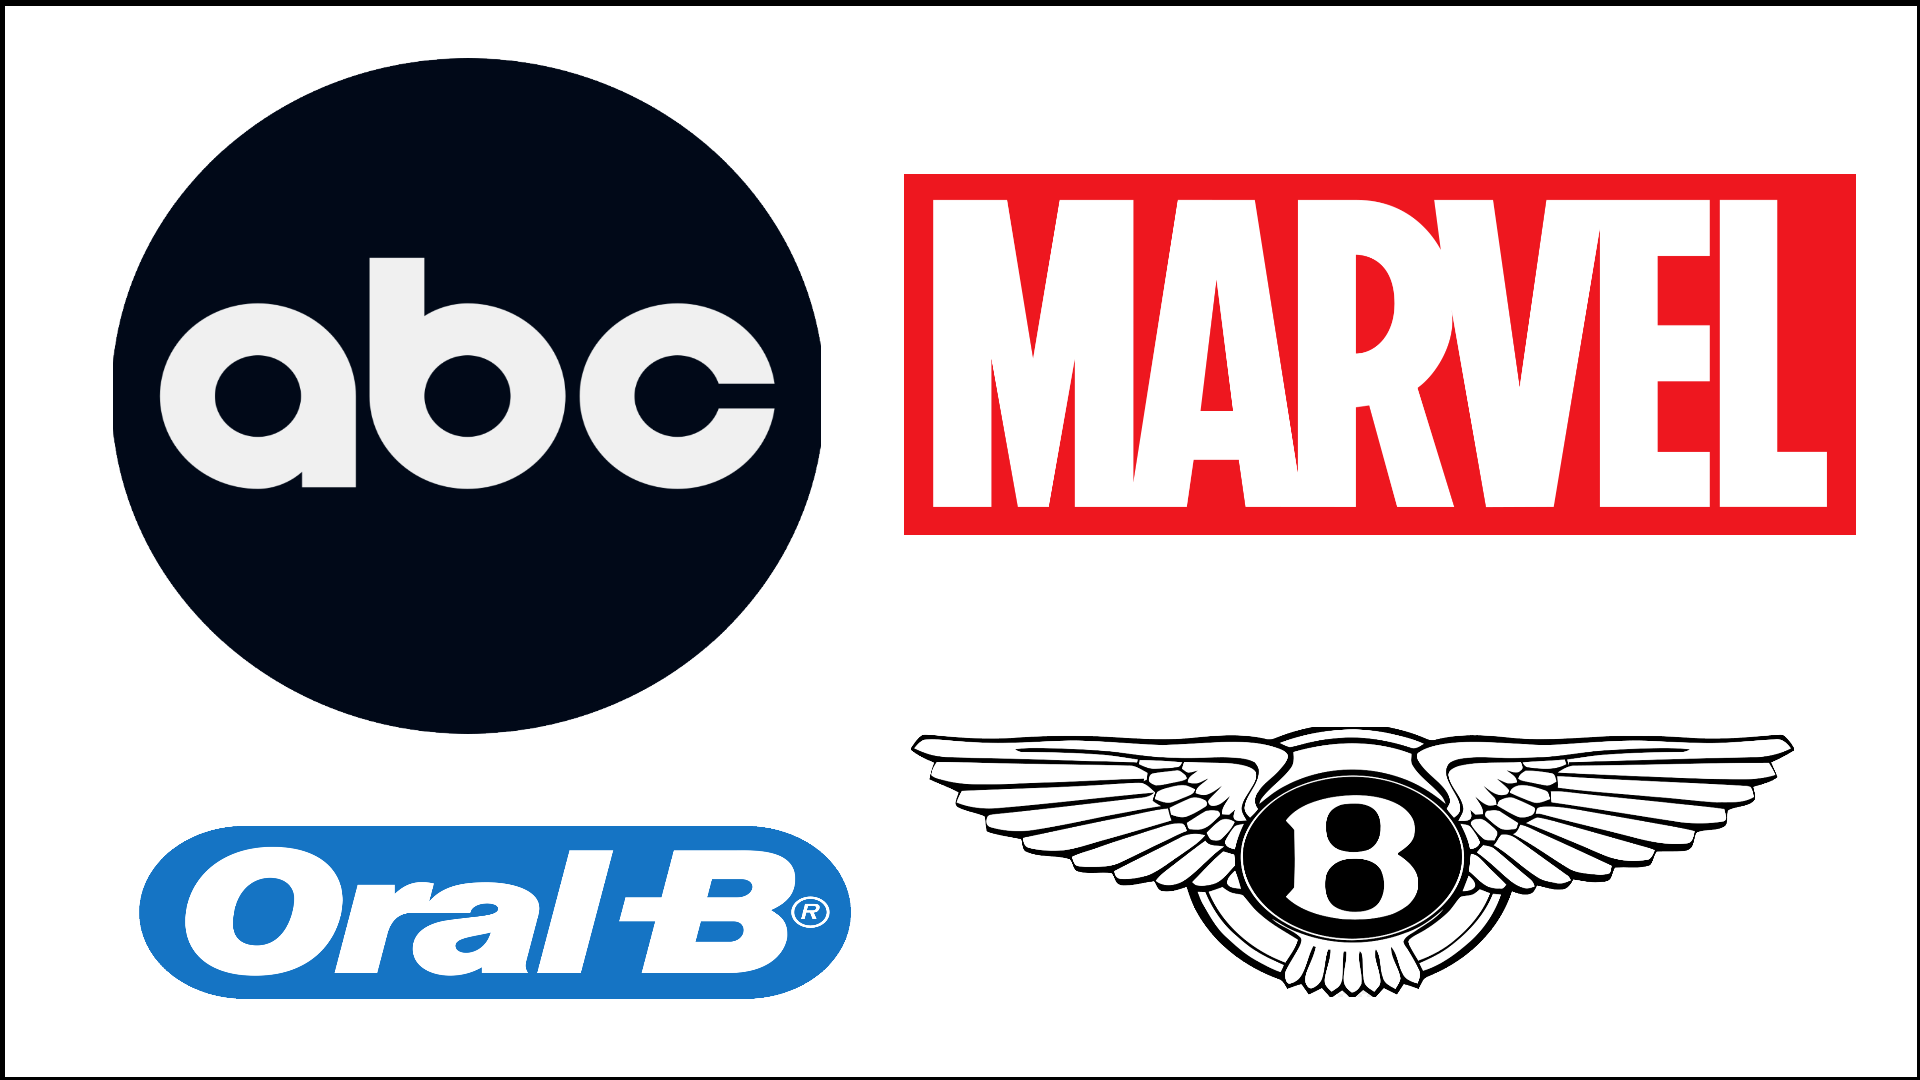 Ejemplos de logos blancos